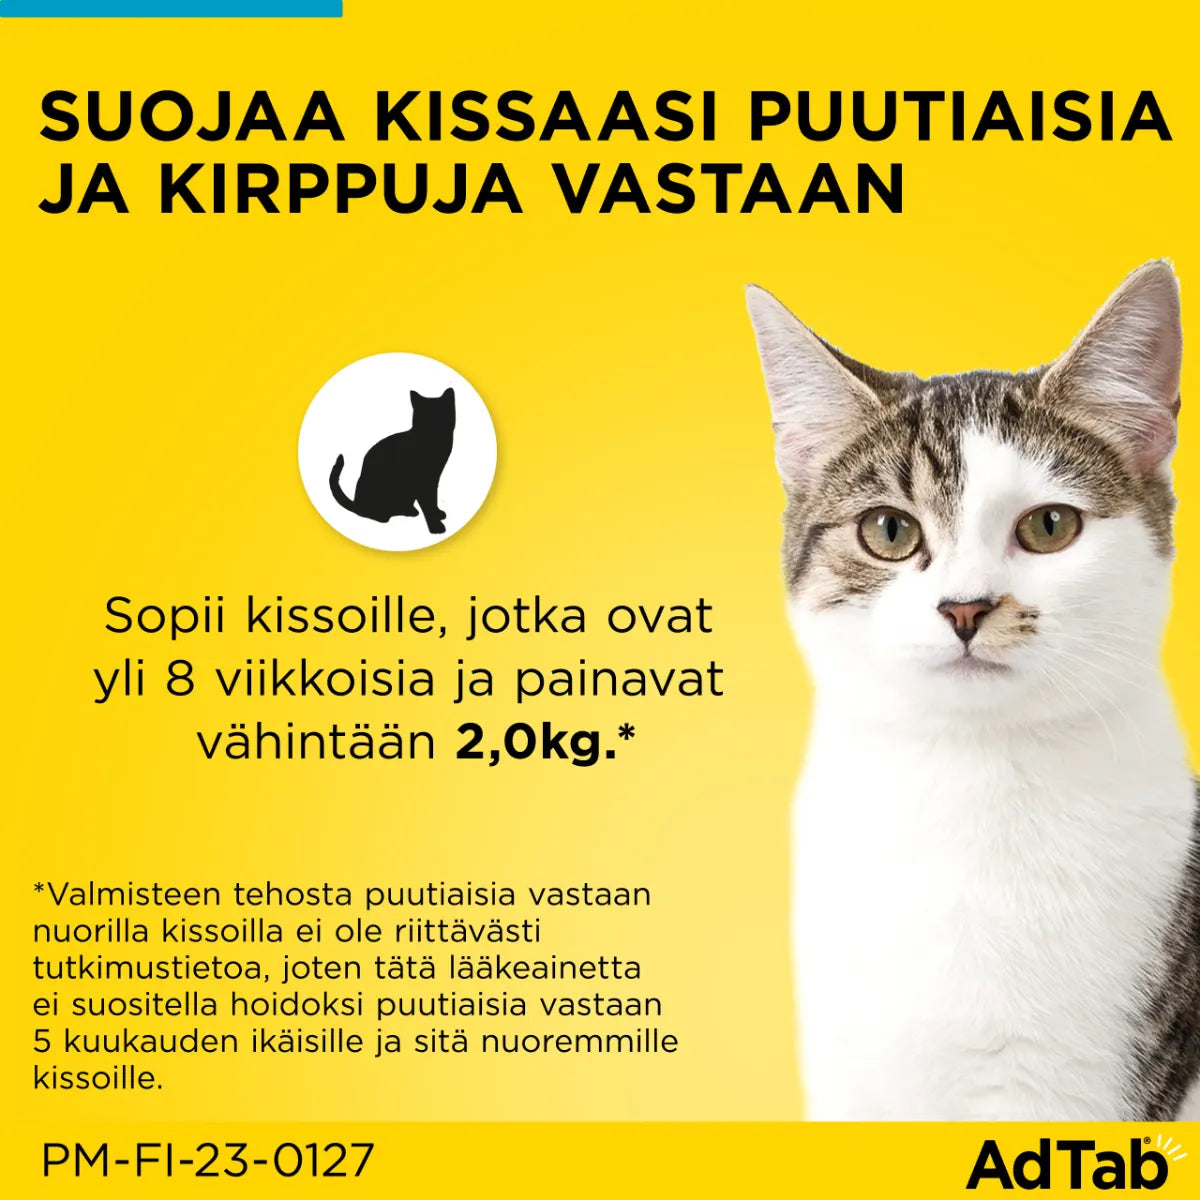 ADTAB 48 mg vet purutabletti kissoille yli 2-8 kg 3 kpl puutiaisia ja kirppuja vastaan